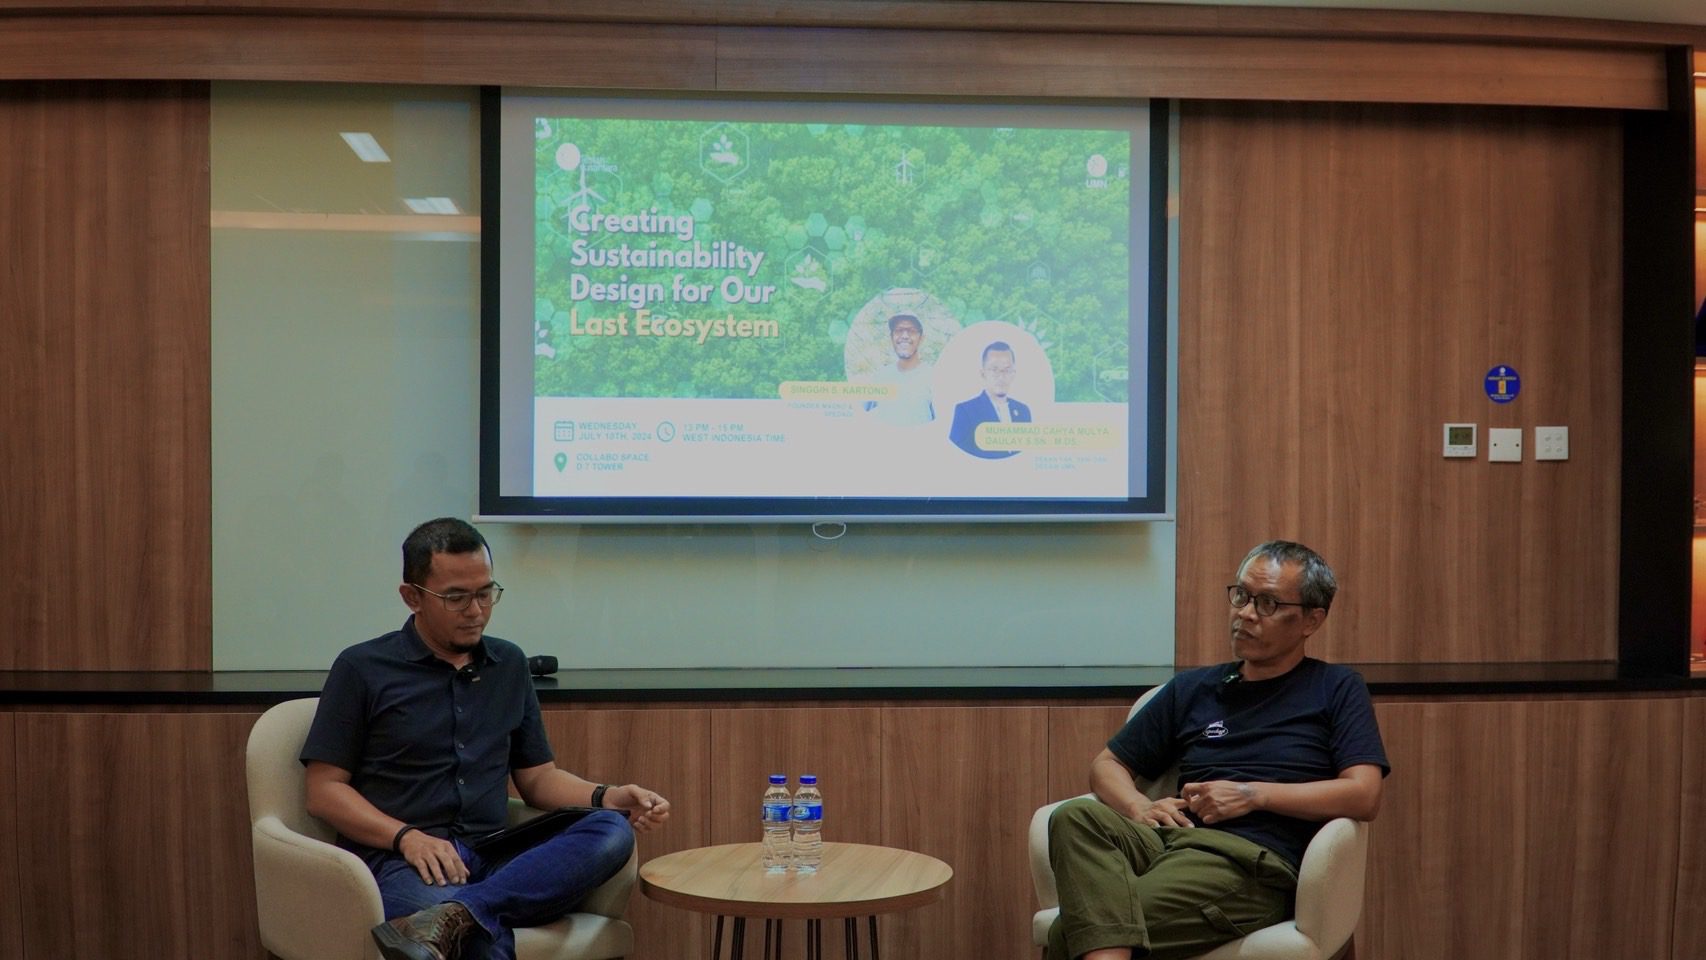 Lestari Nusantara: Creating A Sustainable Design for Our Last Ecosystem